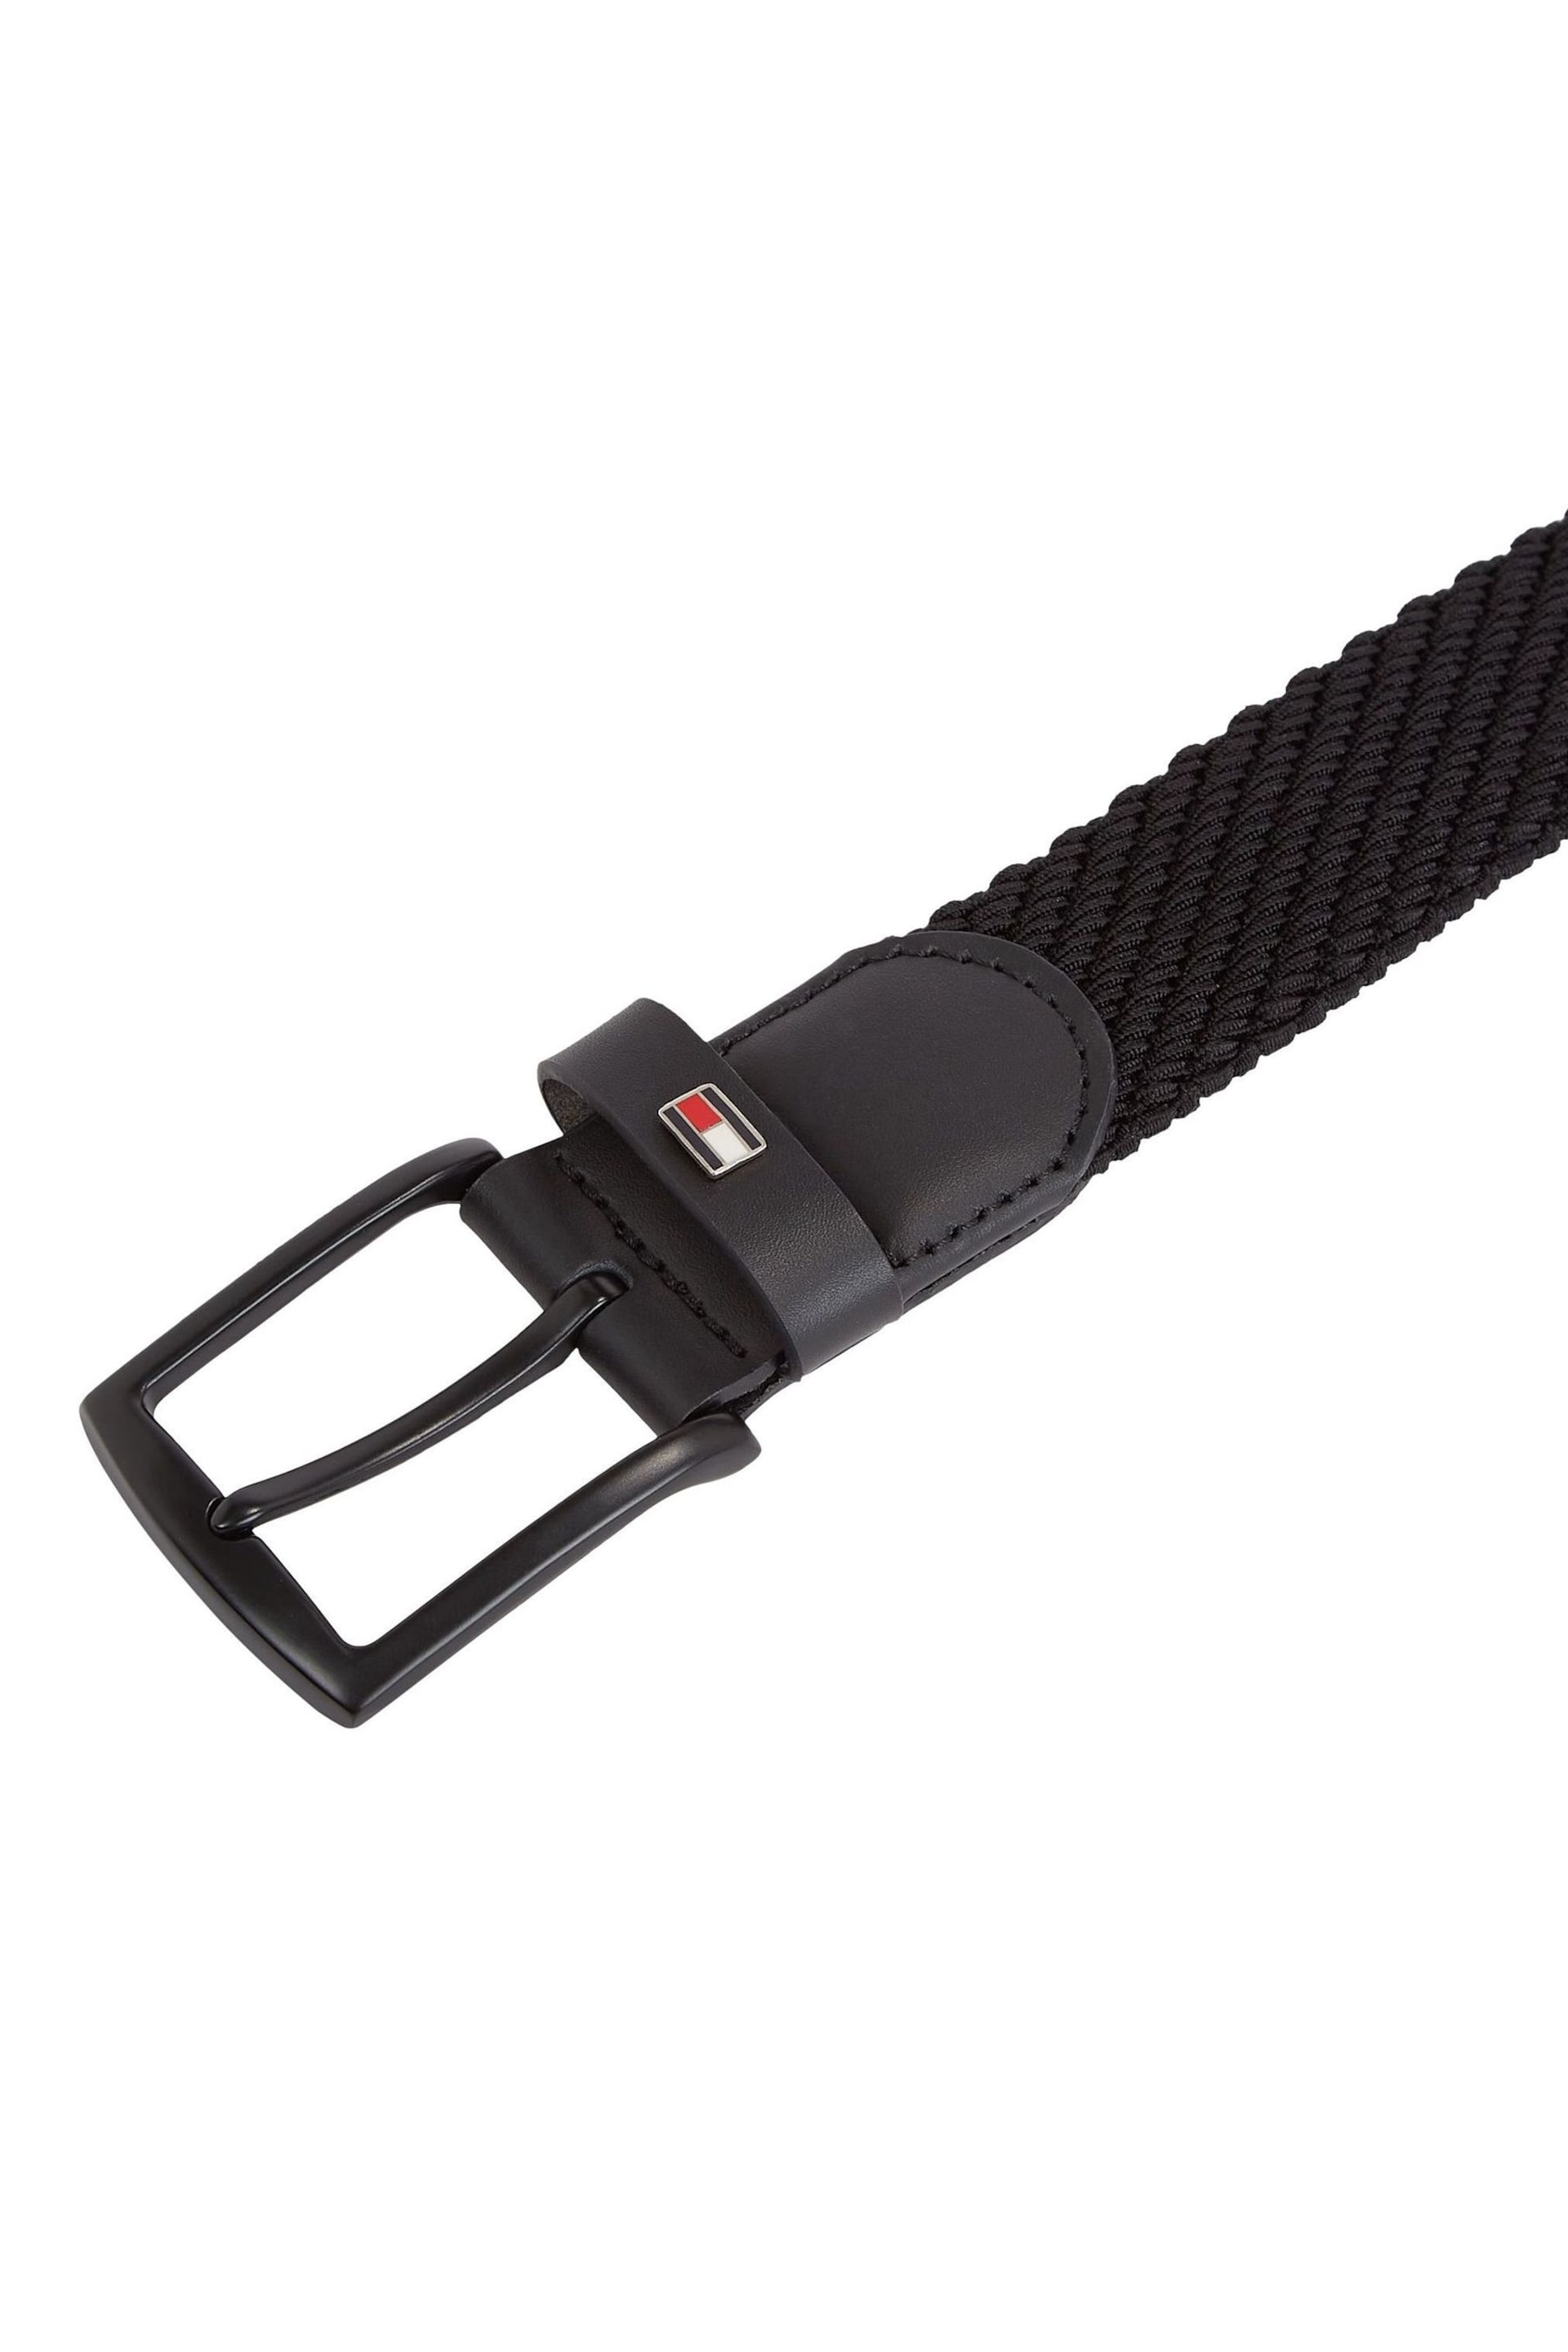 Tommy Hilfiger Denton 3.5 Black Elastic Belt - Image 2 of 3